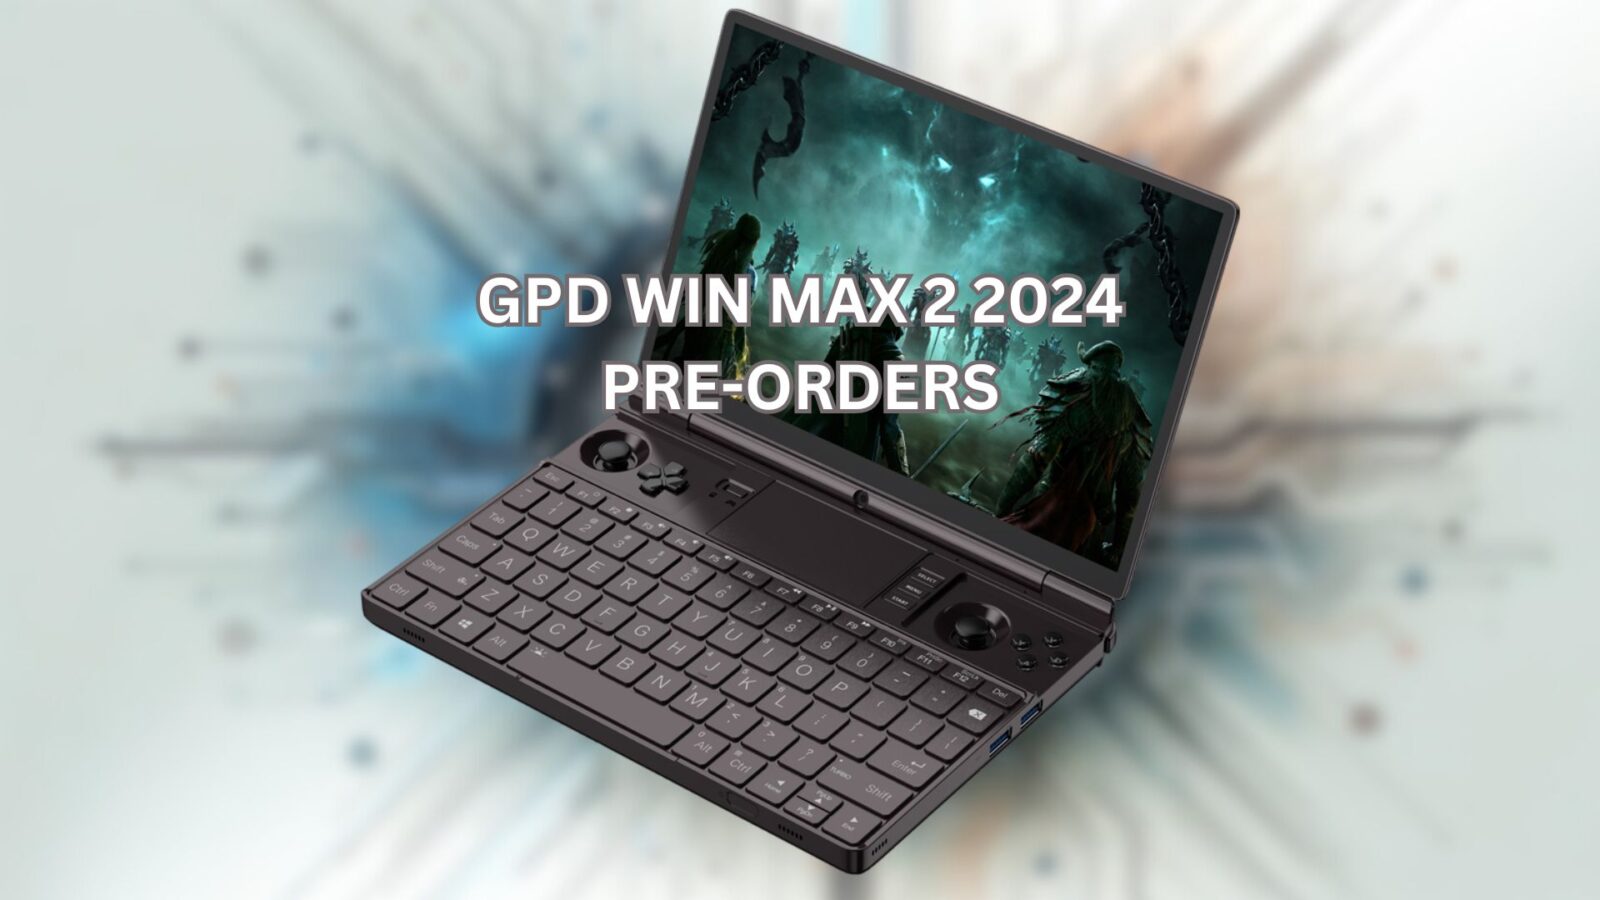 GPD WIN MAX 2 2024 pre-orders